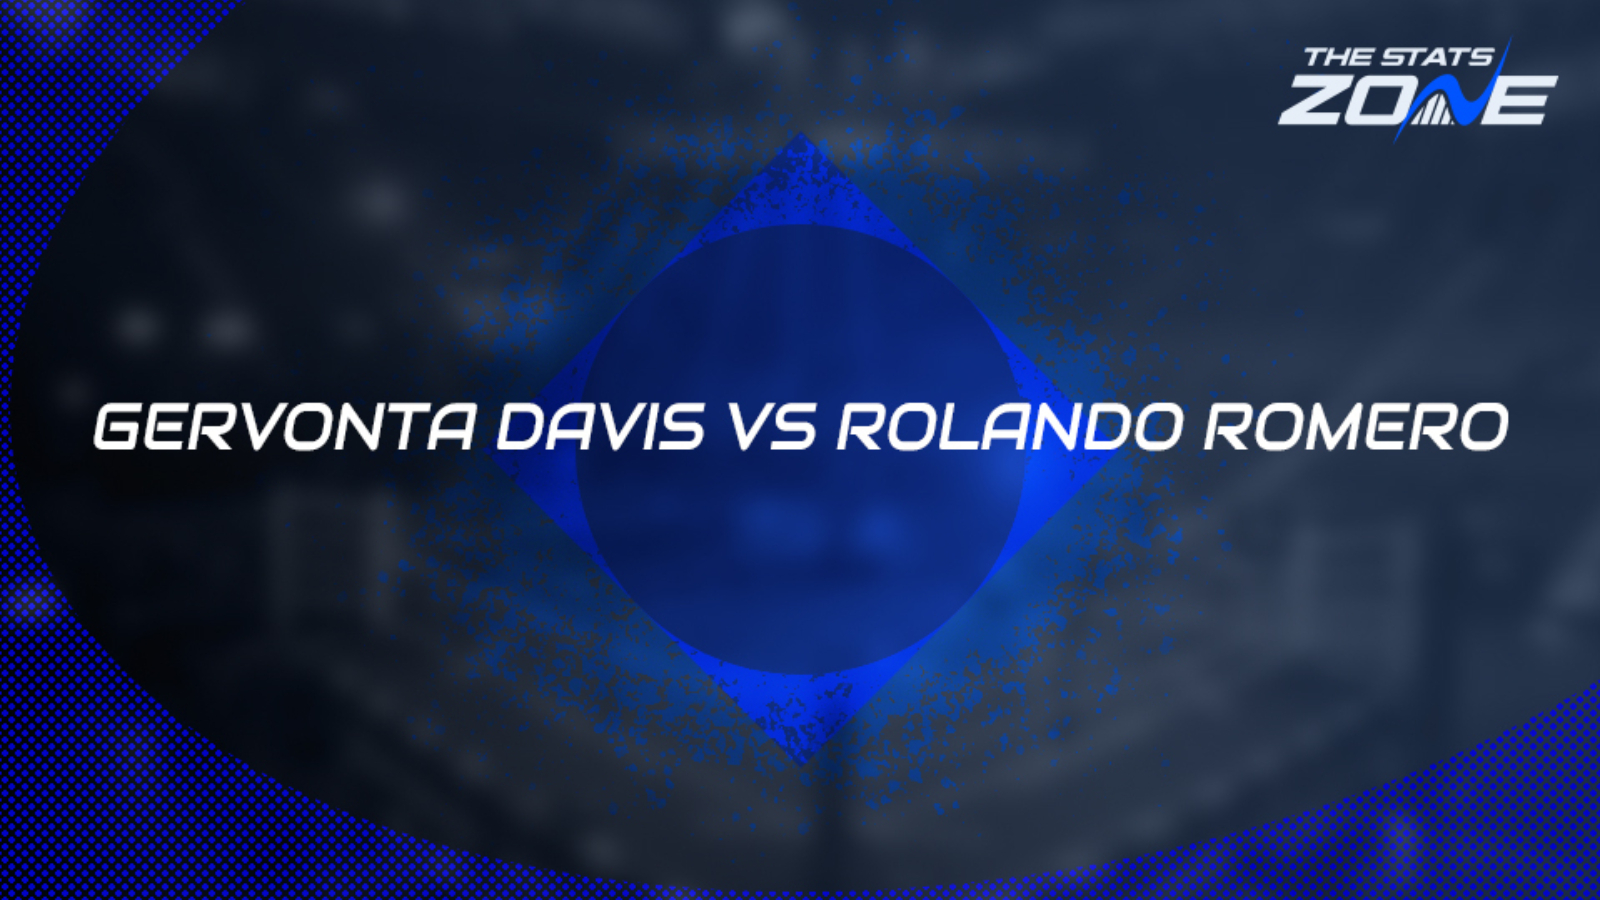 Gervonta Davis vs Rolando Romero Preview and Prediction